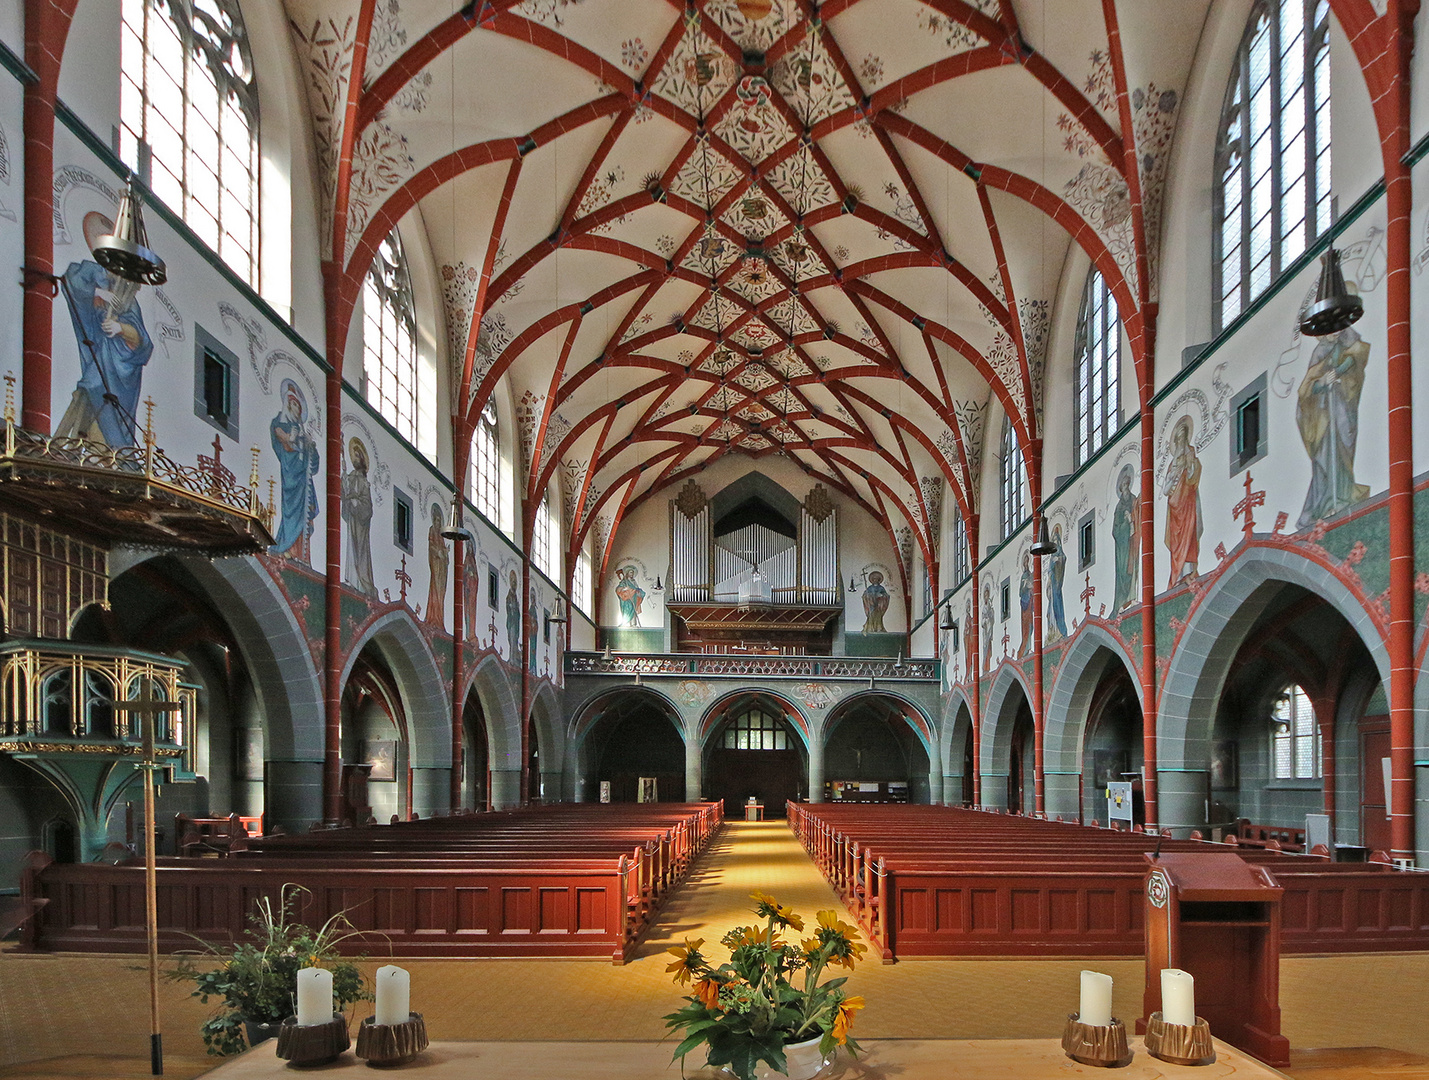 Katholische Kirche St. Georg in Ulm